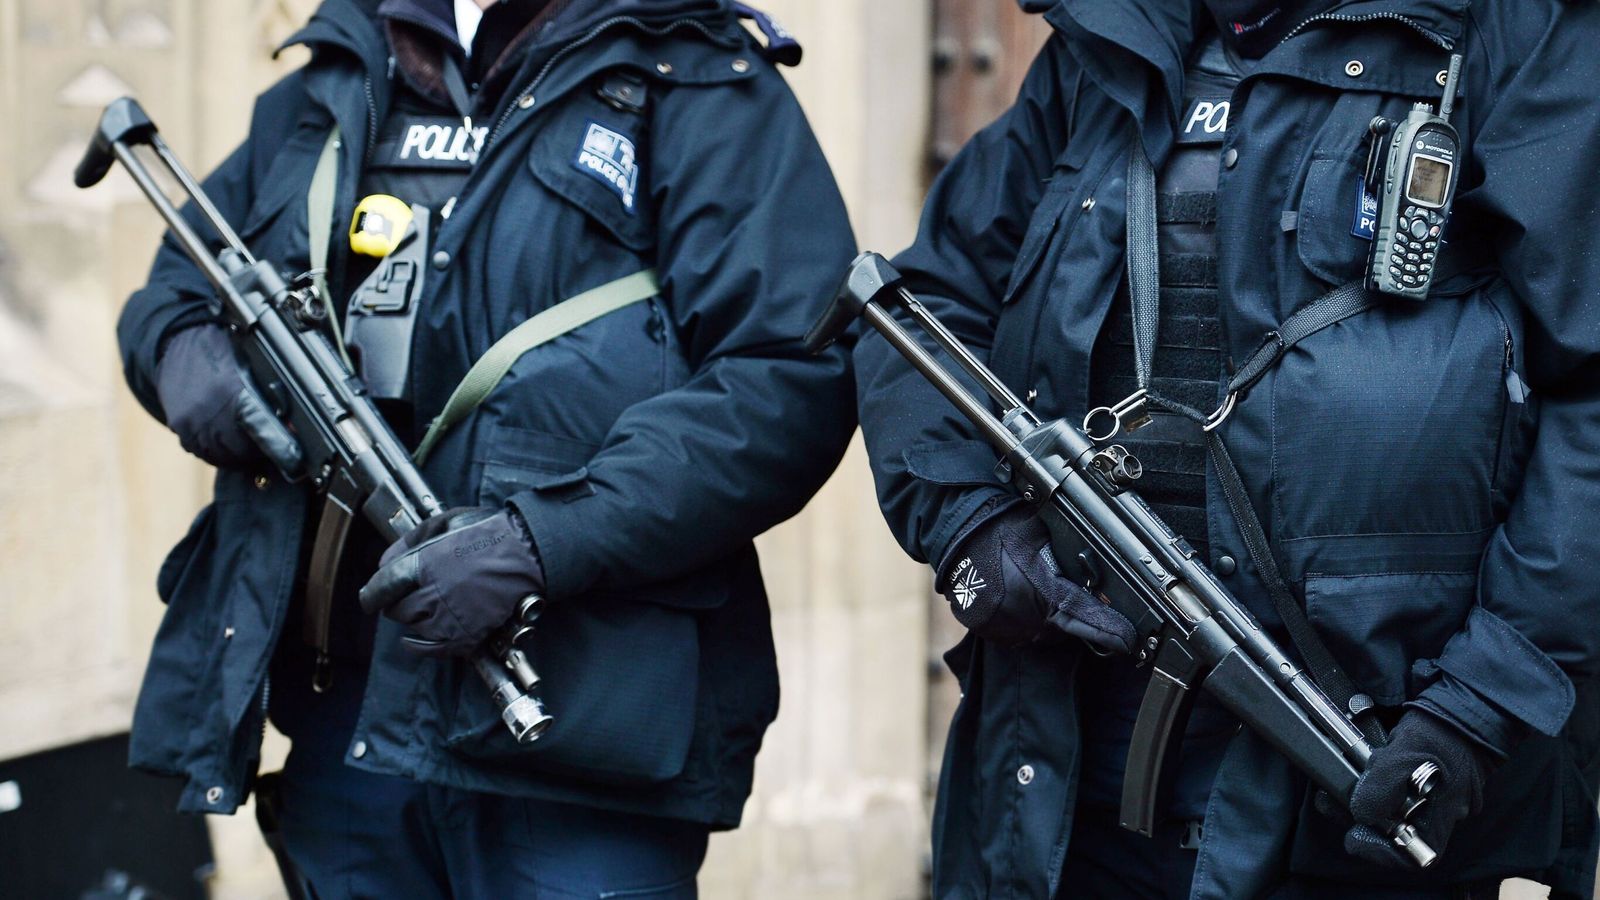 Служители на огнестрелните оръжия от Met Police предават оръжията си след обвинение в убийство на Крис Каба